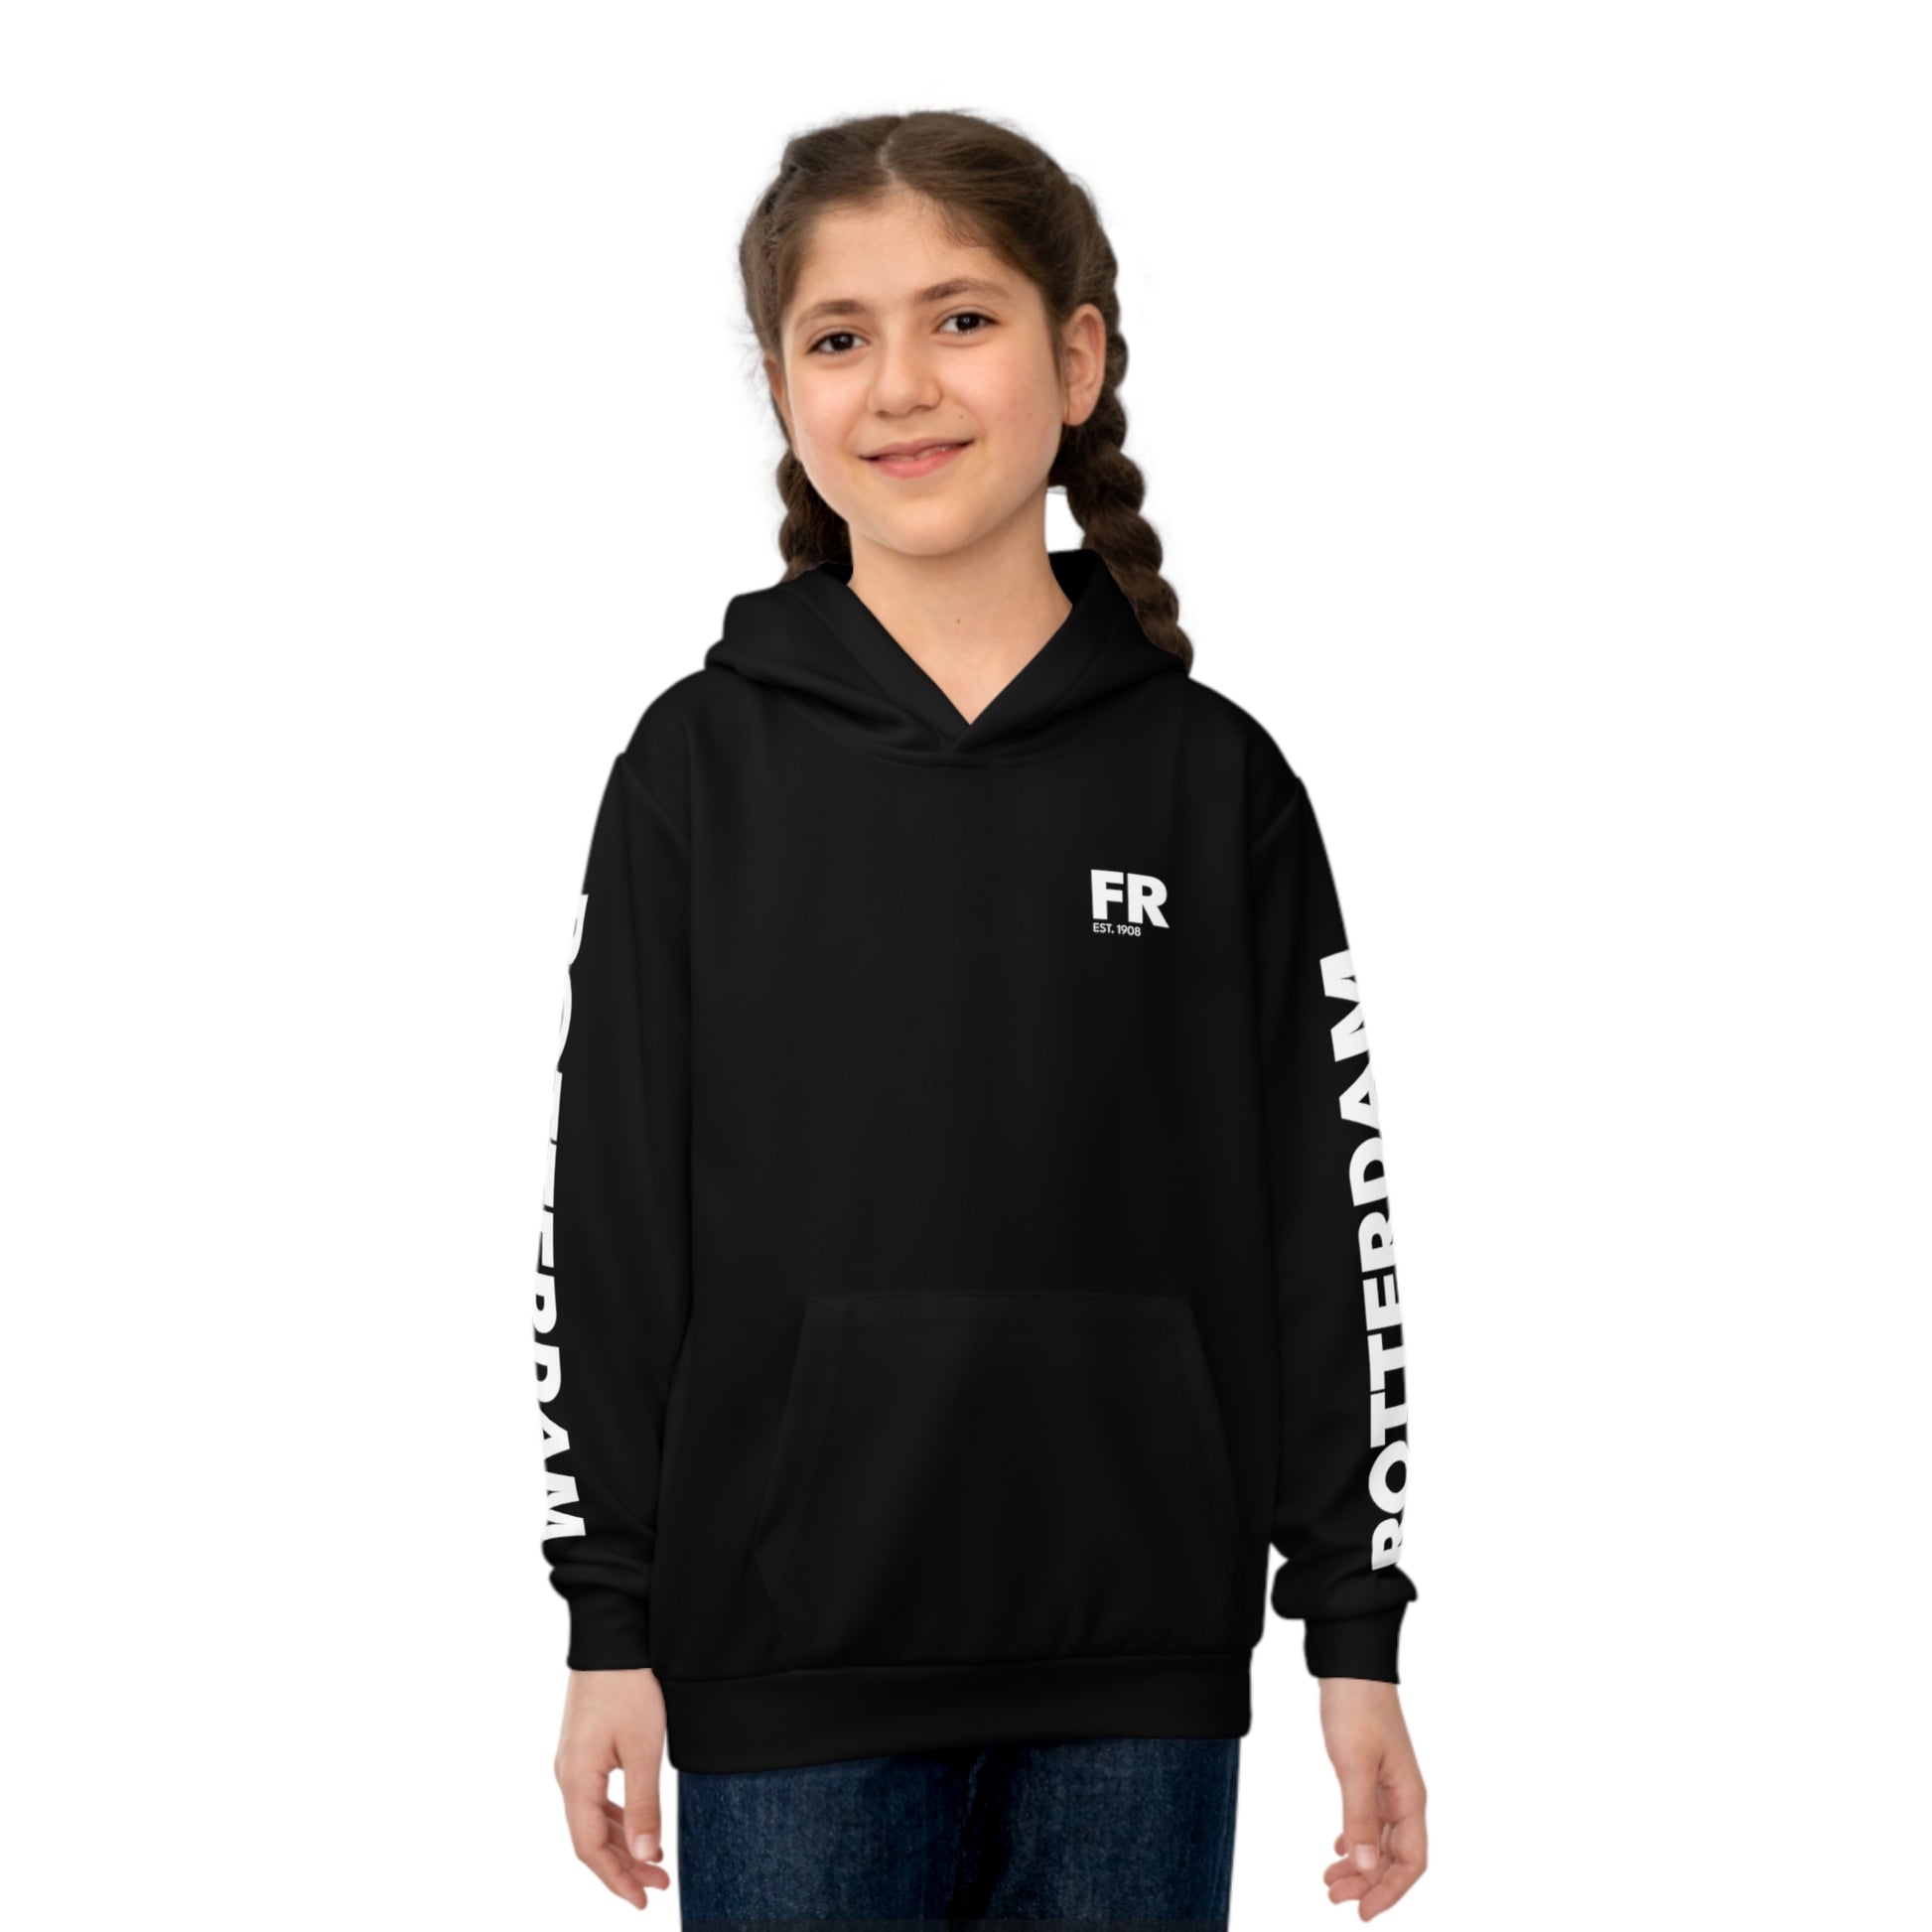 Zwarte kinder hoodie met Rotterdam op de mauwen